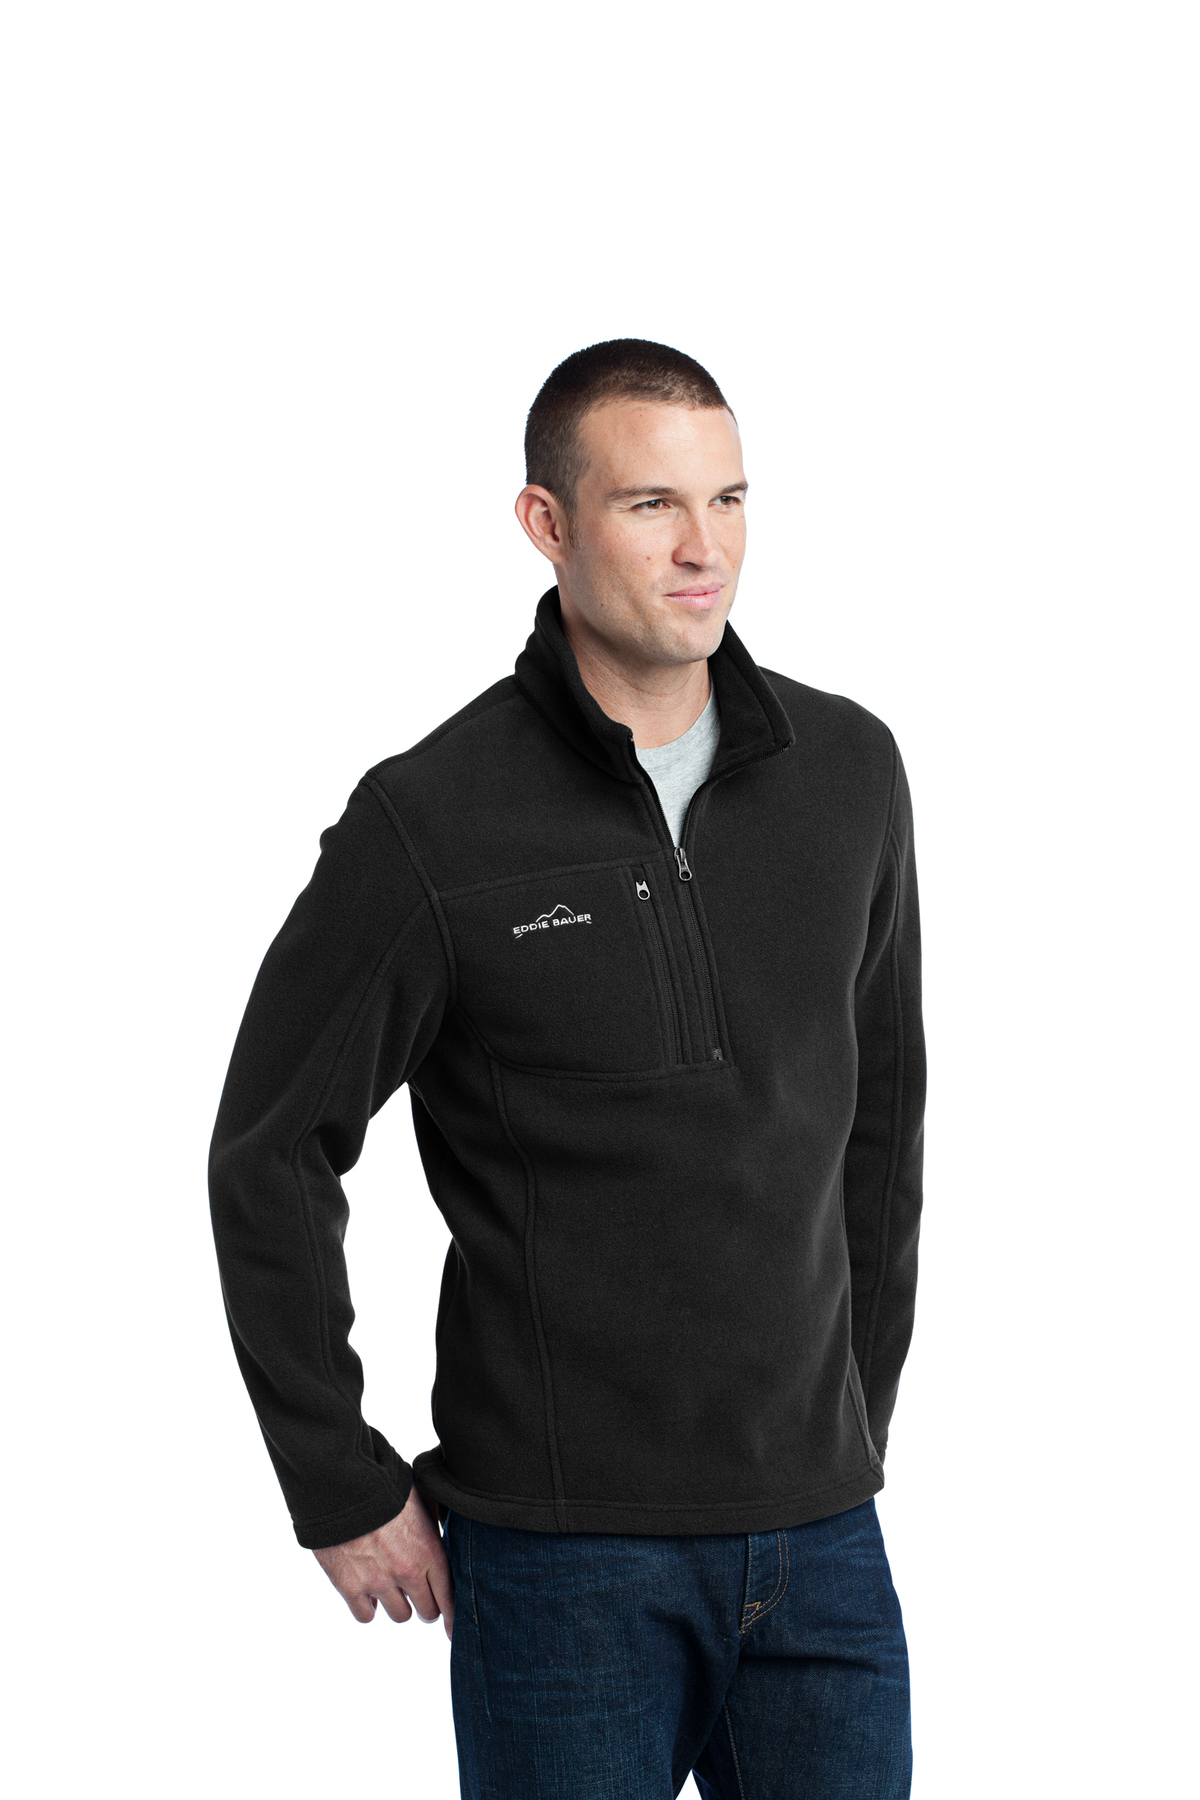 Eddie Bauer - 1/4-Zip Fleece Pullover | Product | SanMar